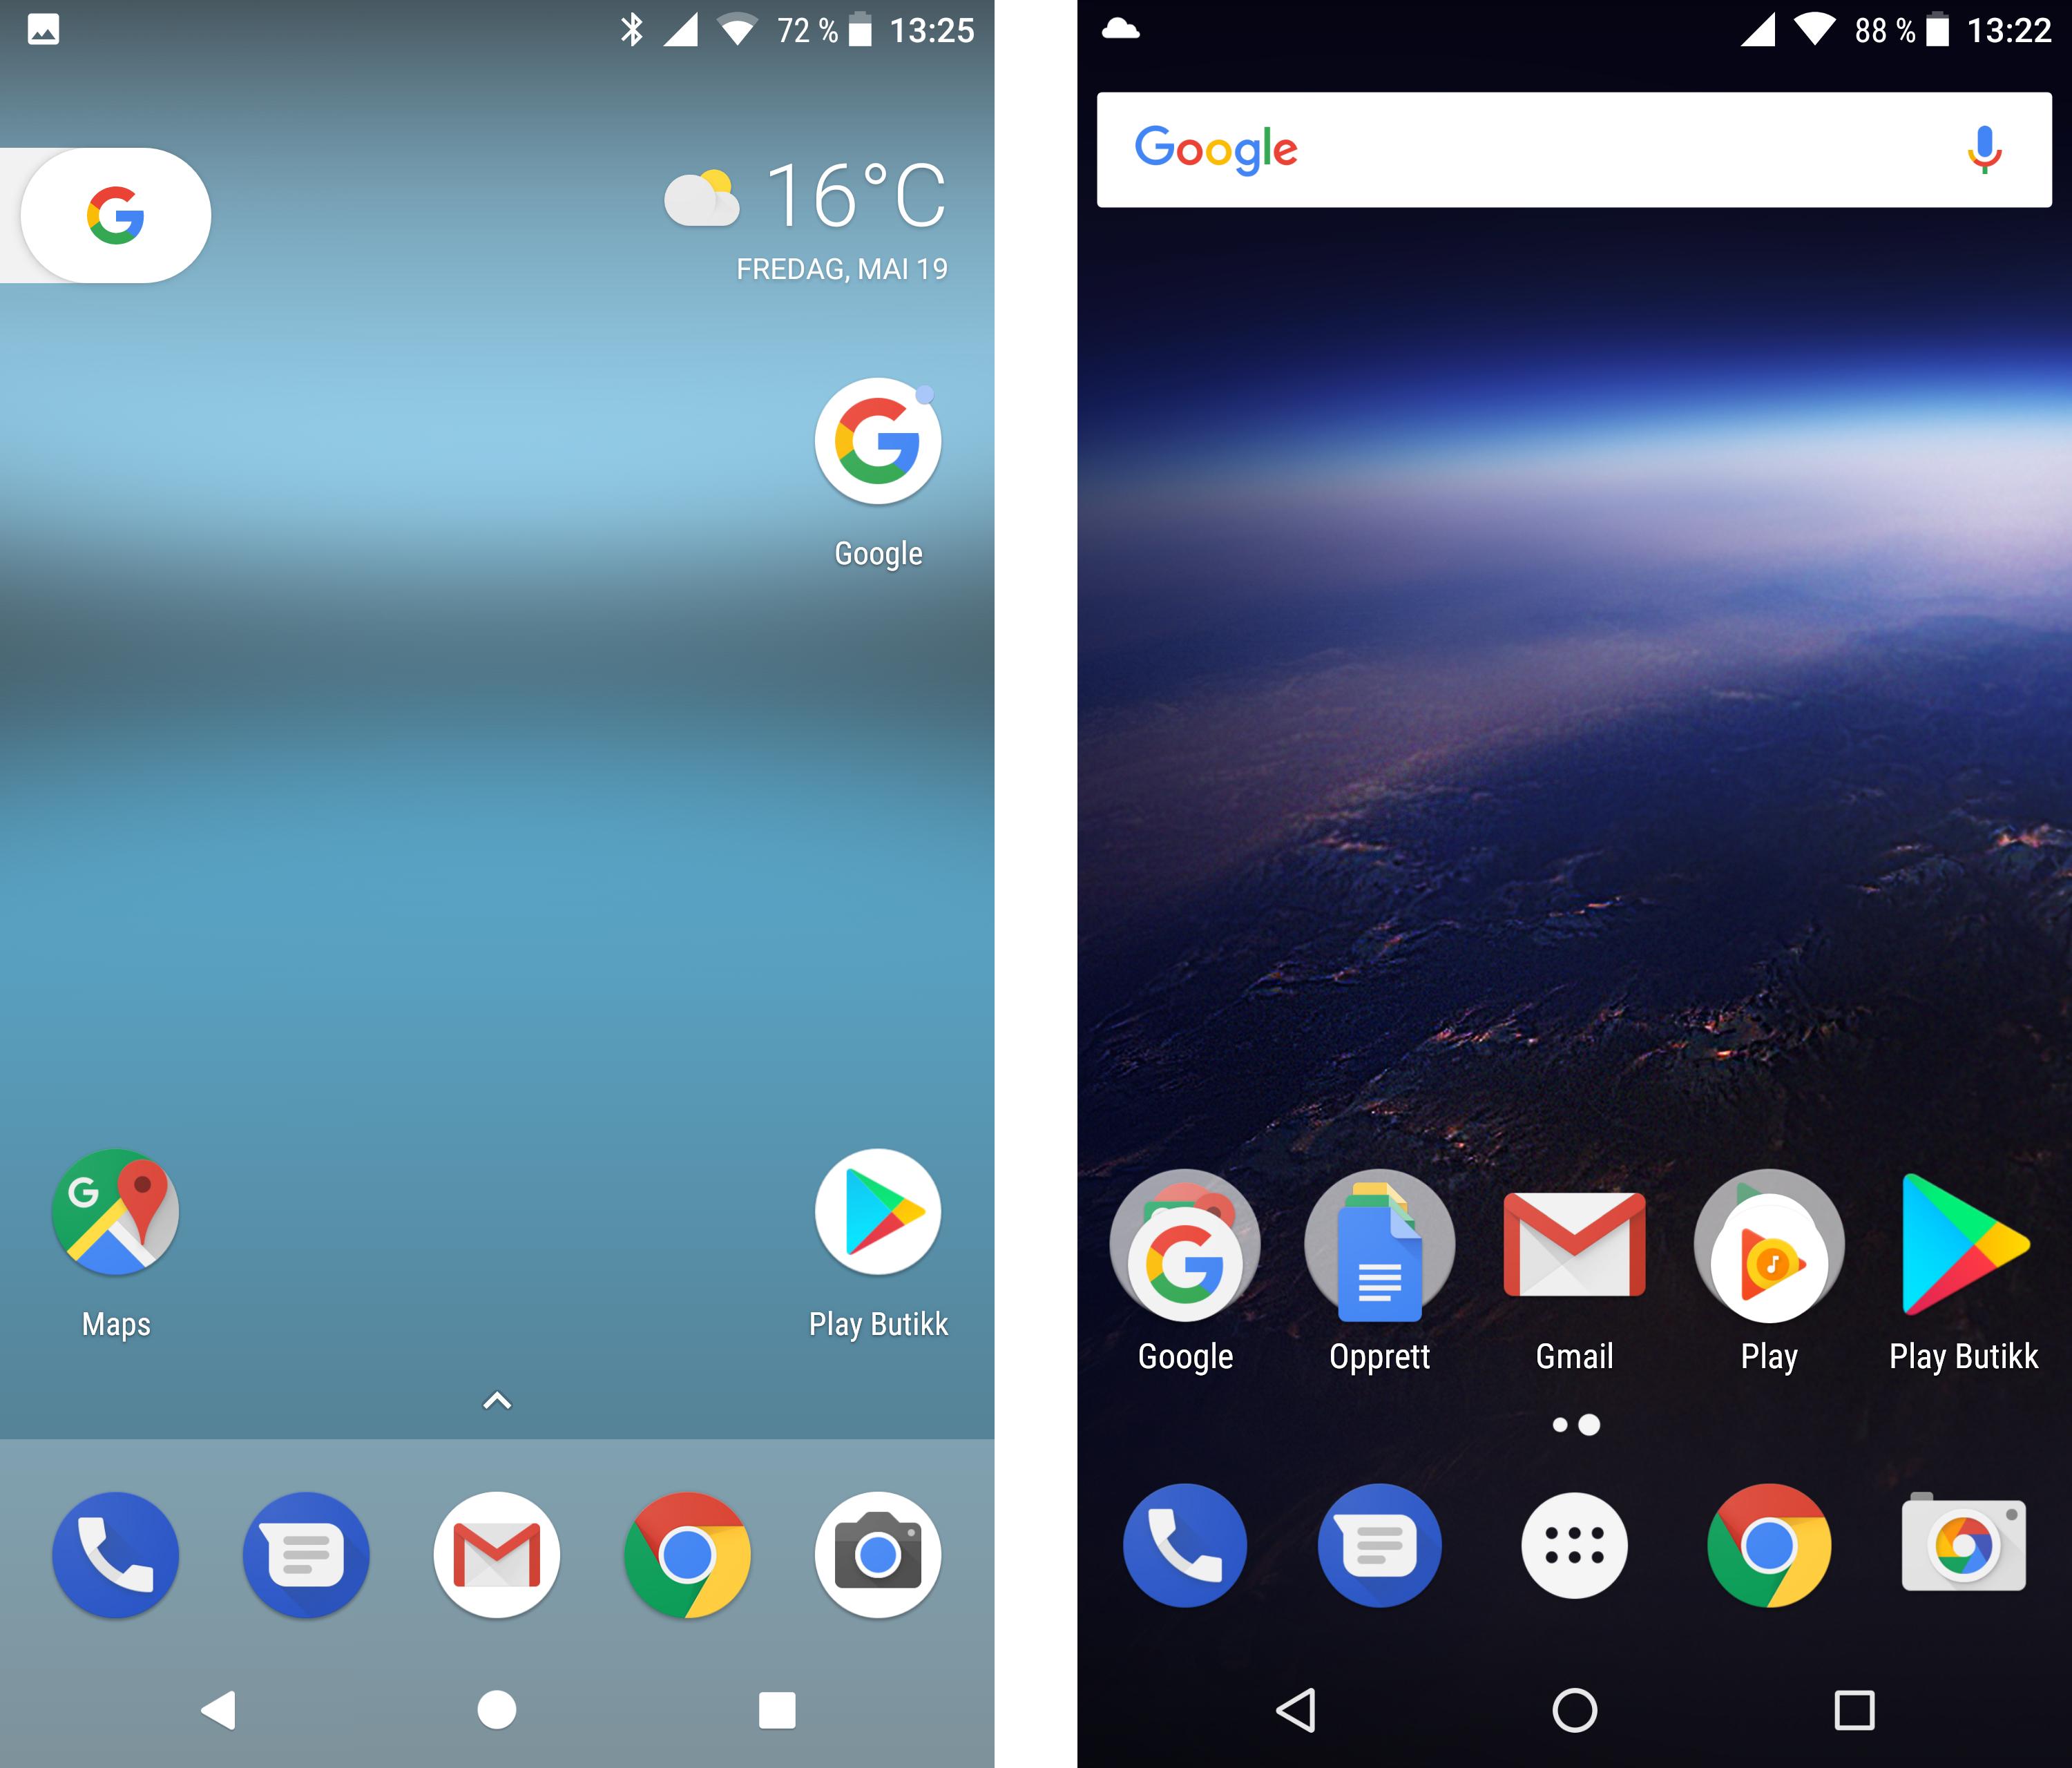 Telefonene beholder designpreget de har, selv om de kjører Android O. Til venstre er hjemmeskjermen fra Google Pixel, mens den til høyre er Google Nexus 6P - begge oppdatert til siste beta-versjon. Bilde: Finn Jarle Kvalheim, Tek.no